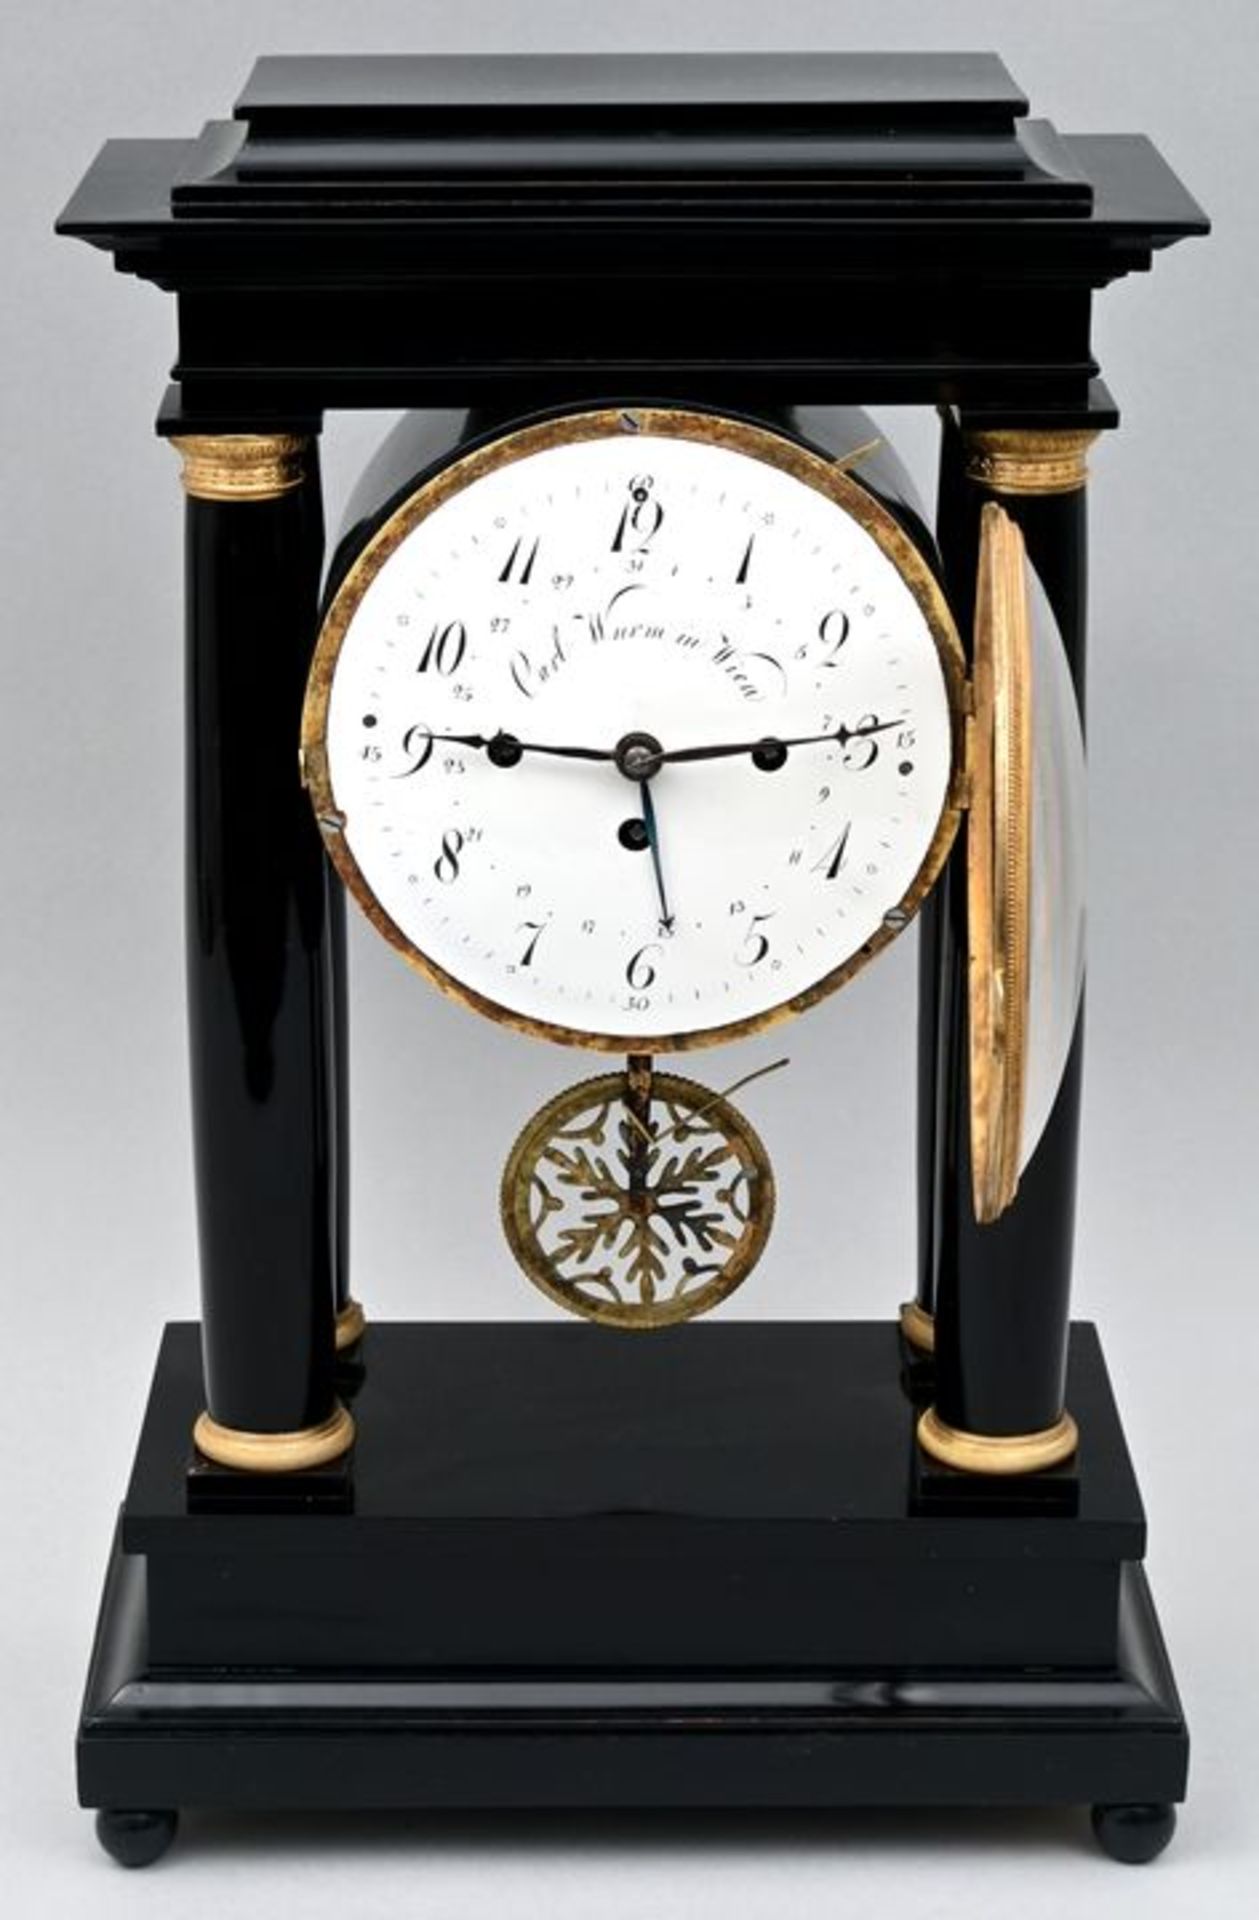 Stutzuhr, C. Wurm, Wien / bracket clock